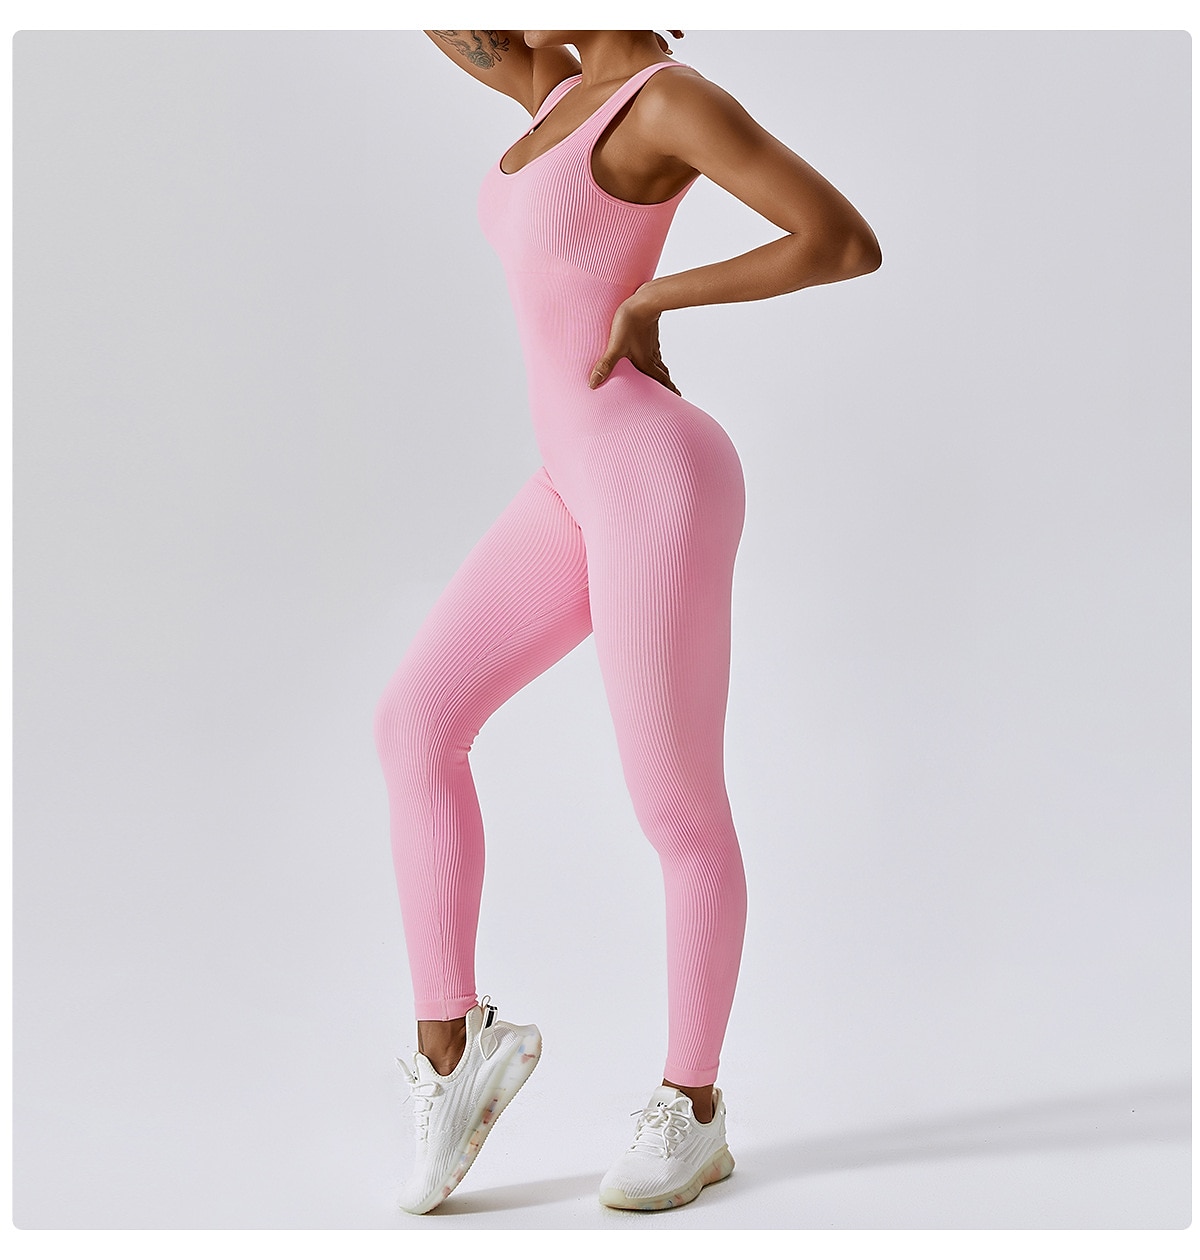 Women's Workout Jumpsuit Solid Color Bodysuit Black Pink Spandex